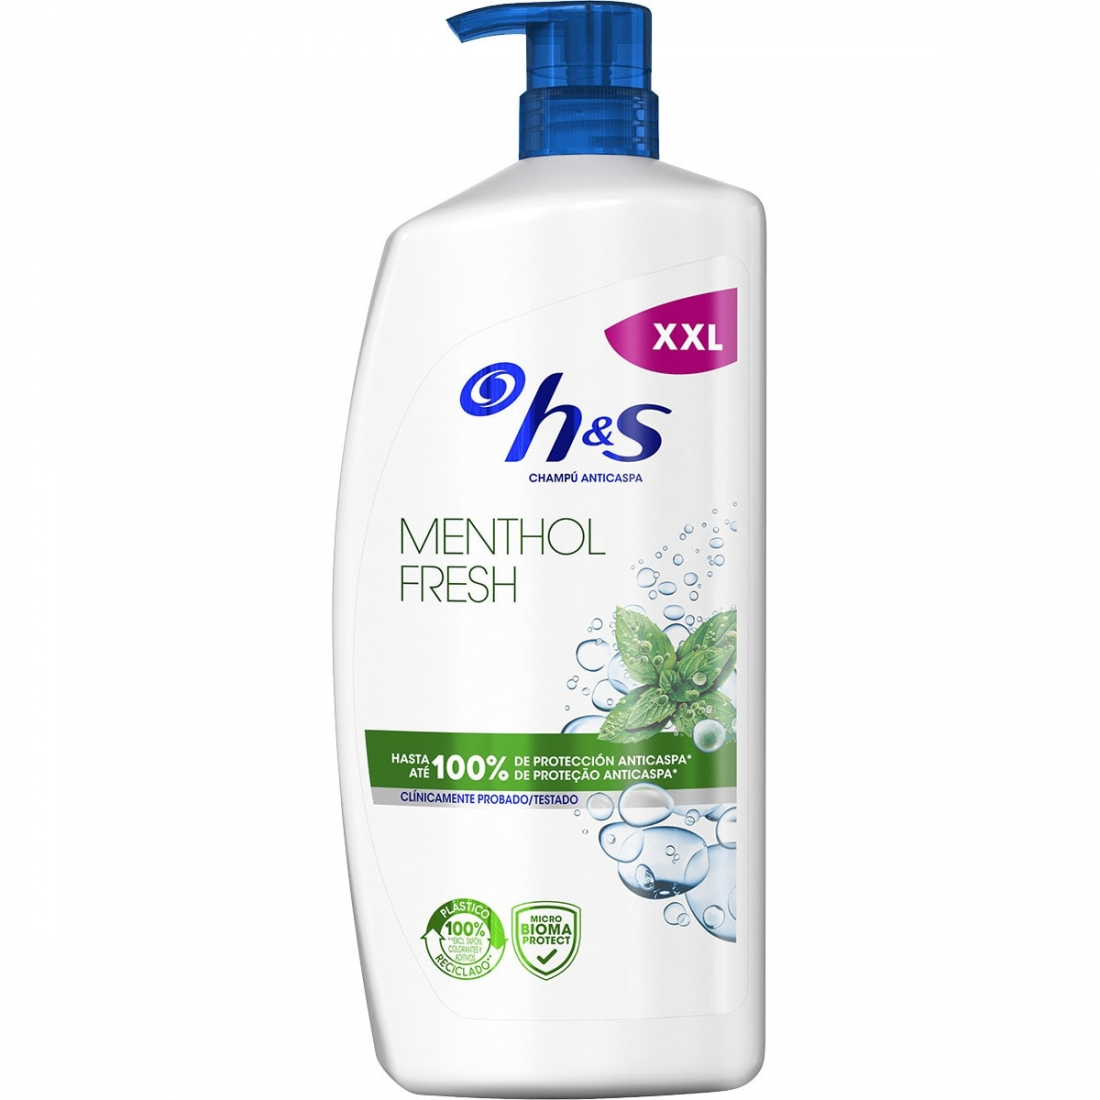 'Menthol Fresh' Dandruff Shampoo - 1 L